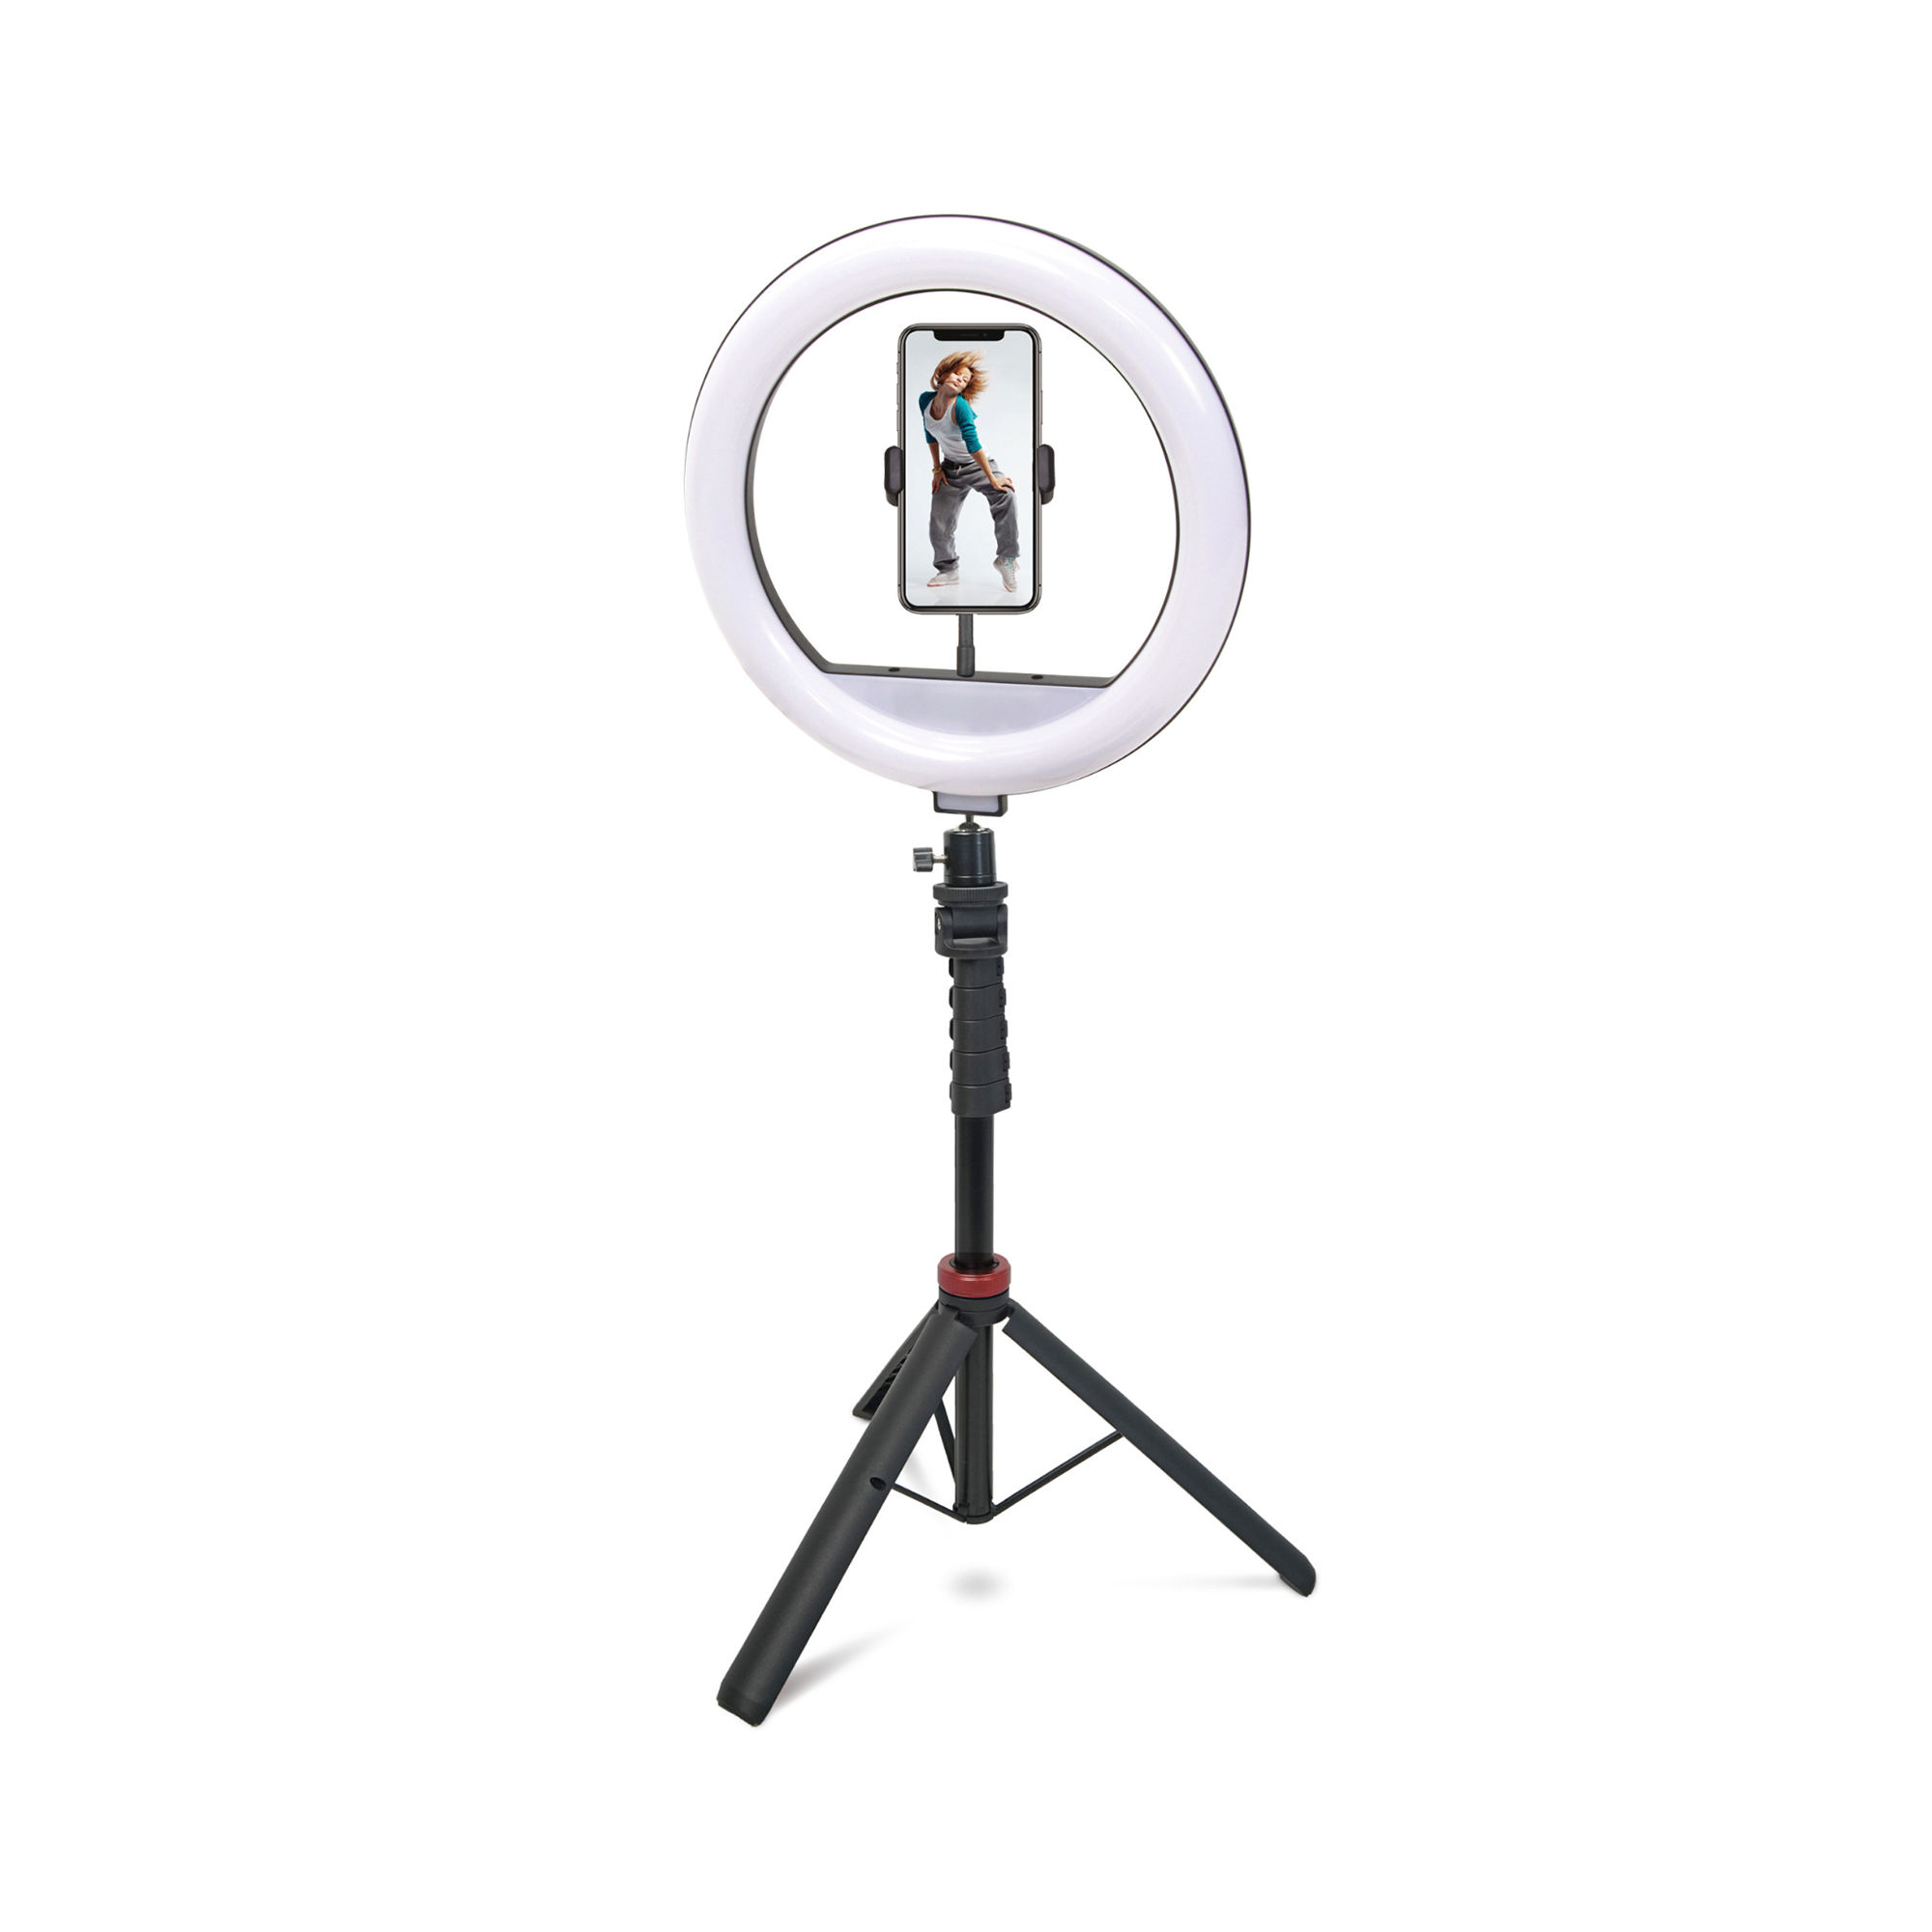 Mobifoto Mobilite 12R MKII Ring Light Vlogging Kit